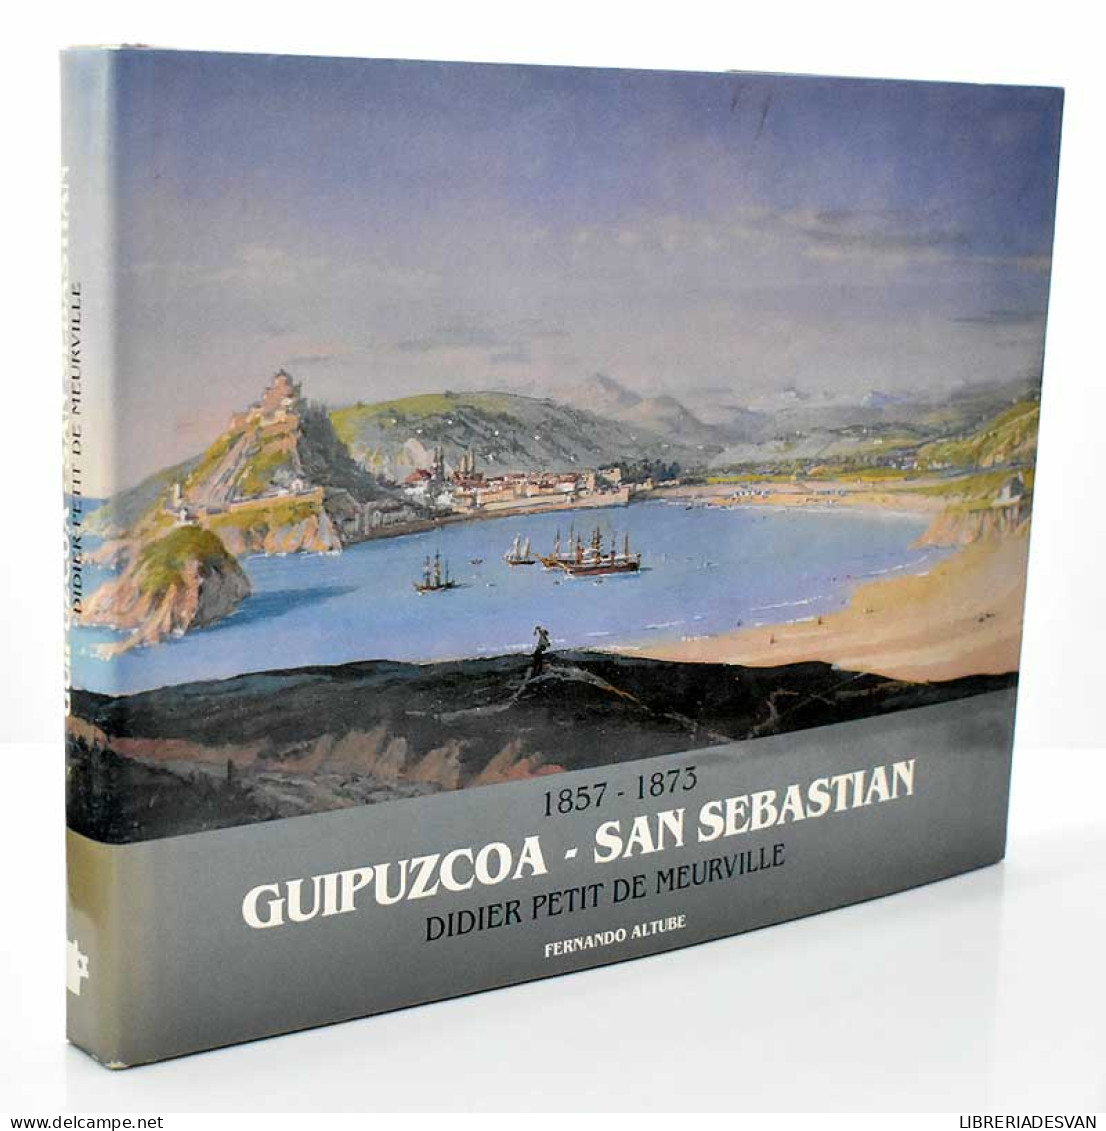 Guipúzcoa - San Sebastián. 1857-1873. Didier Petit De Meurville - Fernando Altube - Kunst, Vrije Tijd